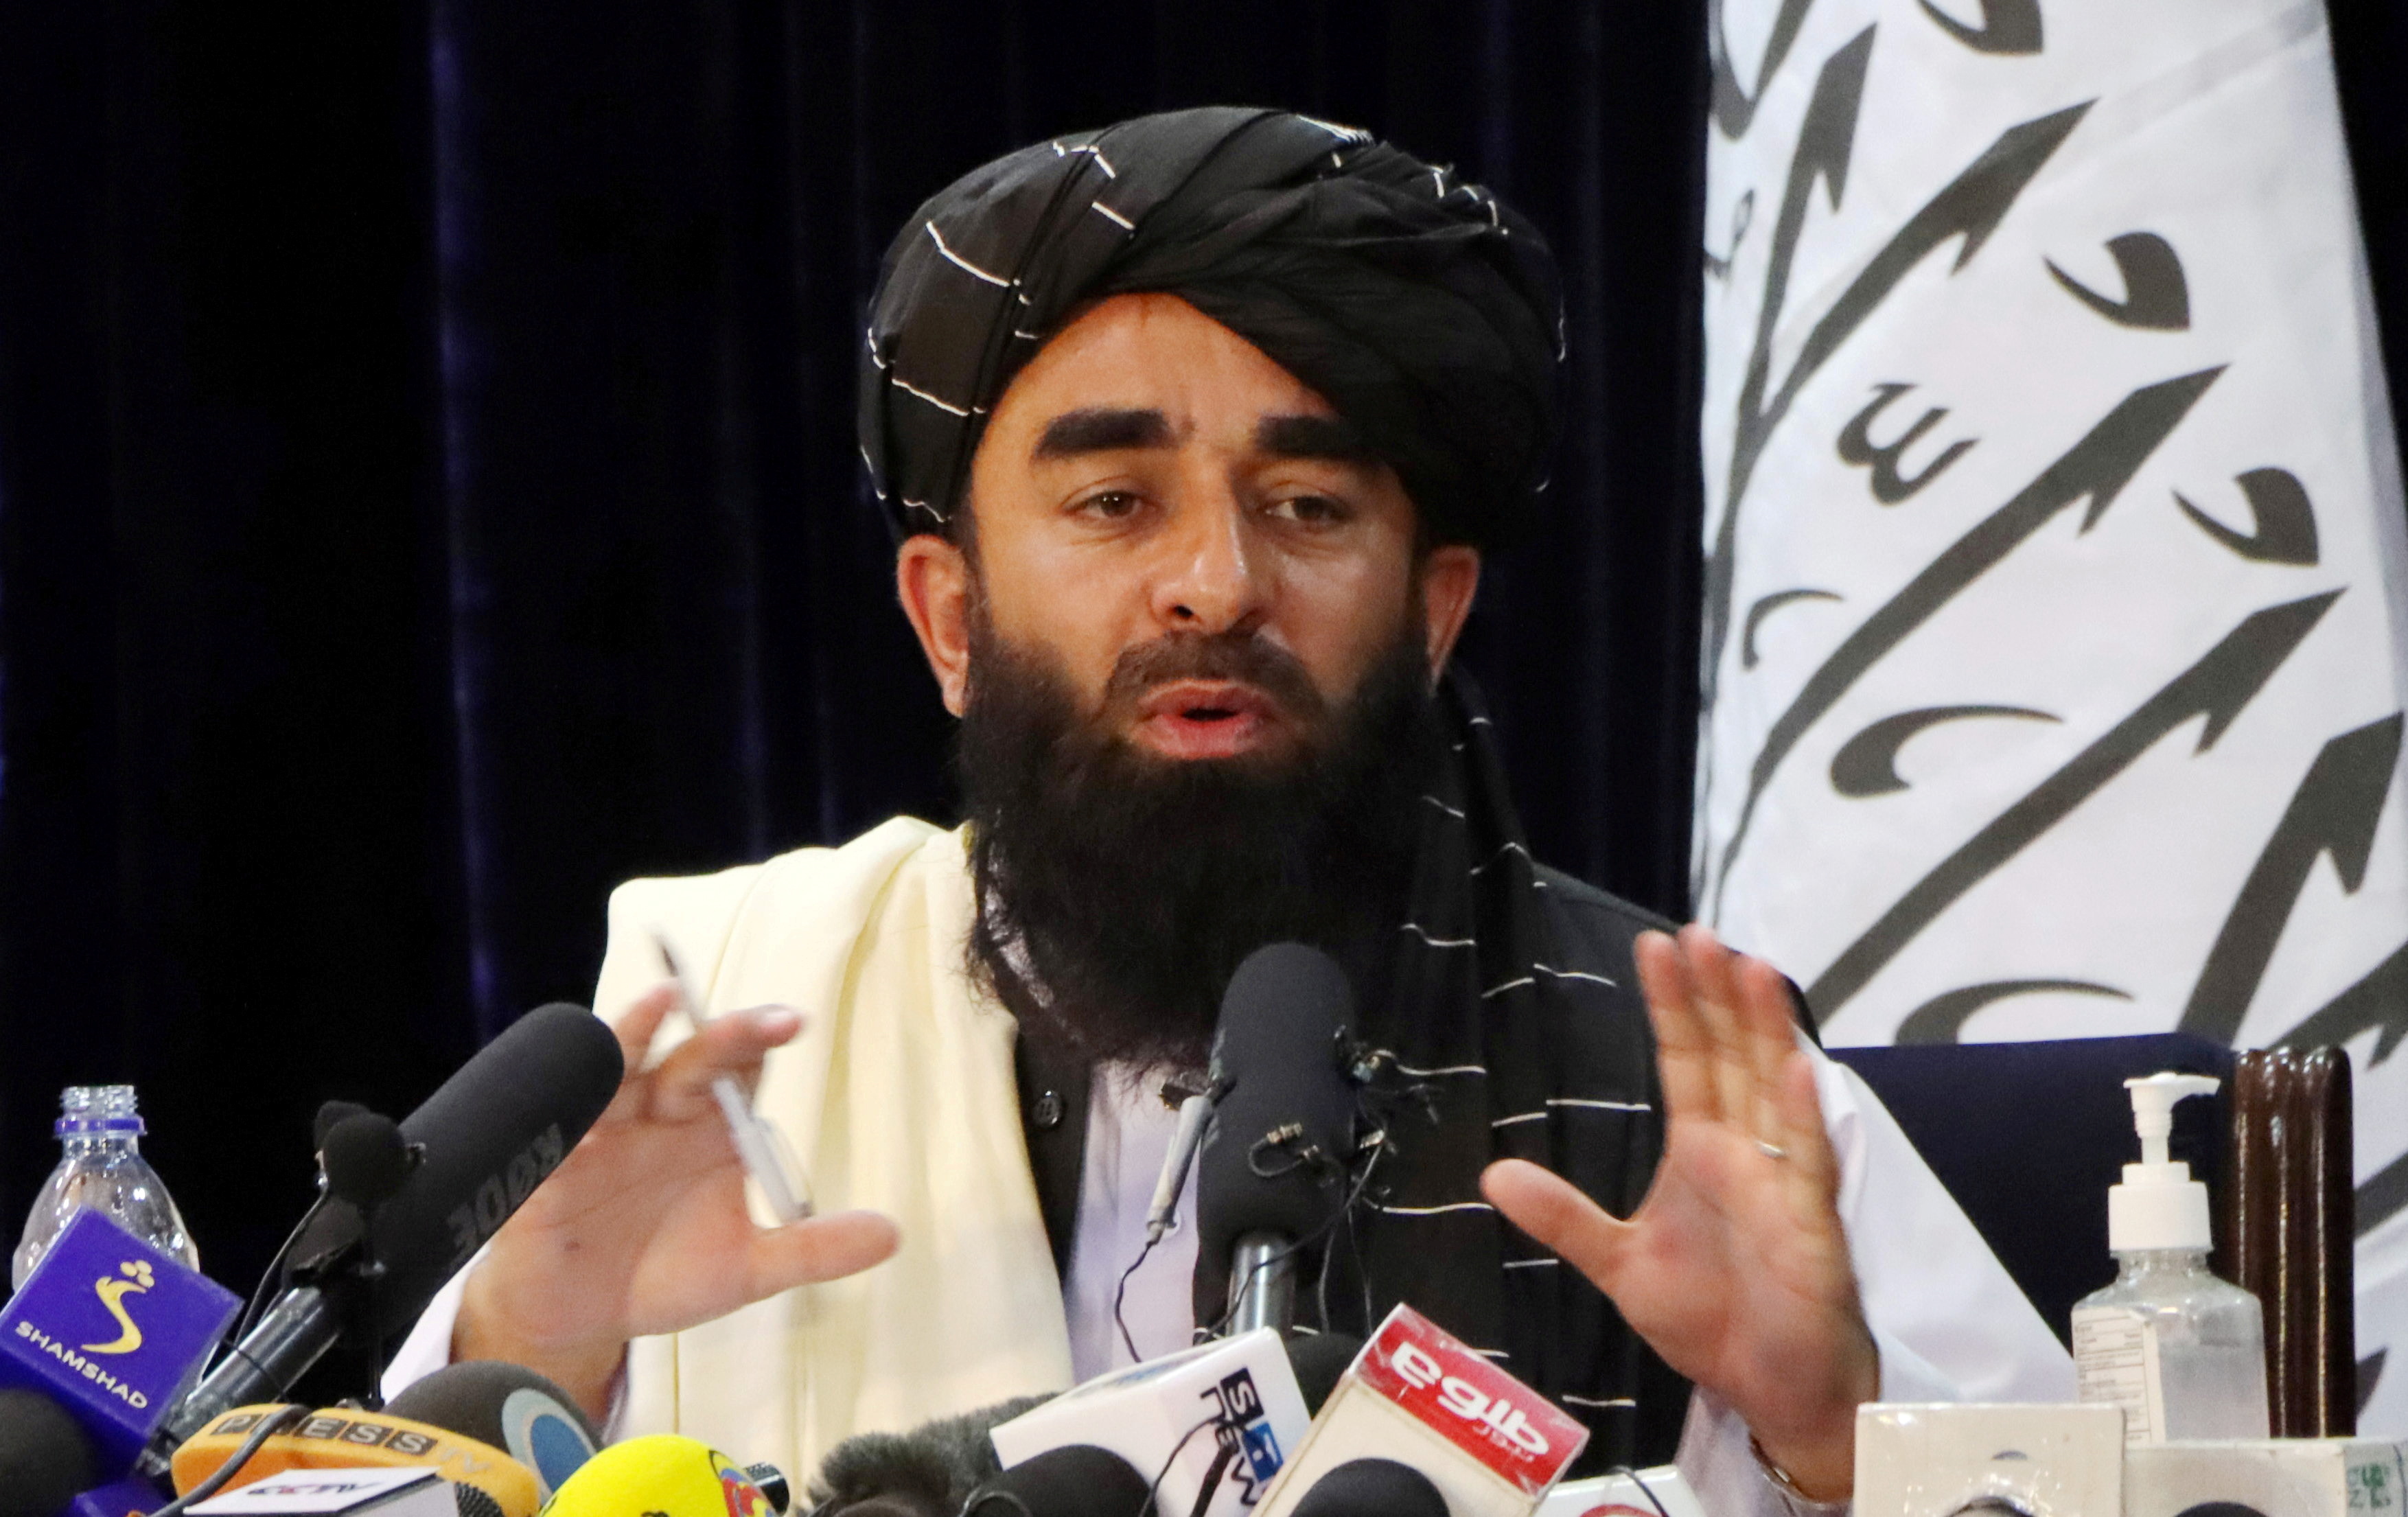 Taliban news